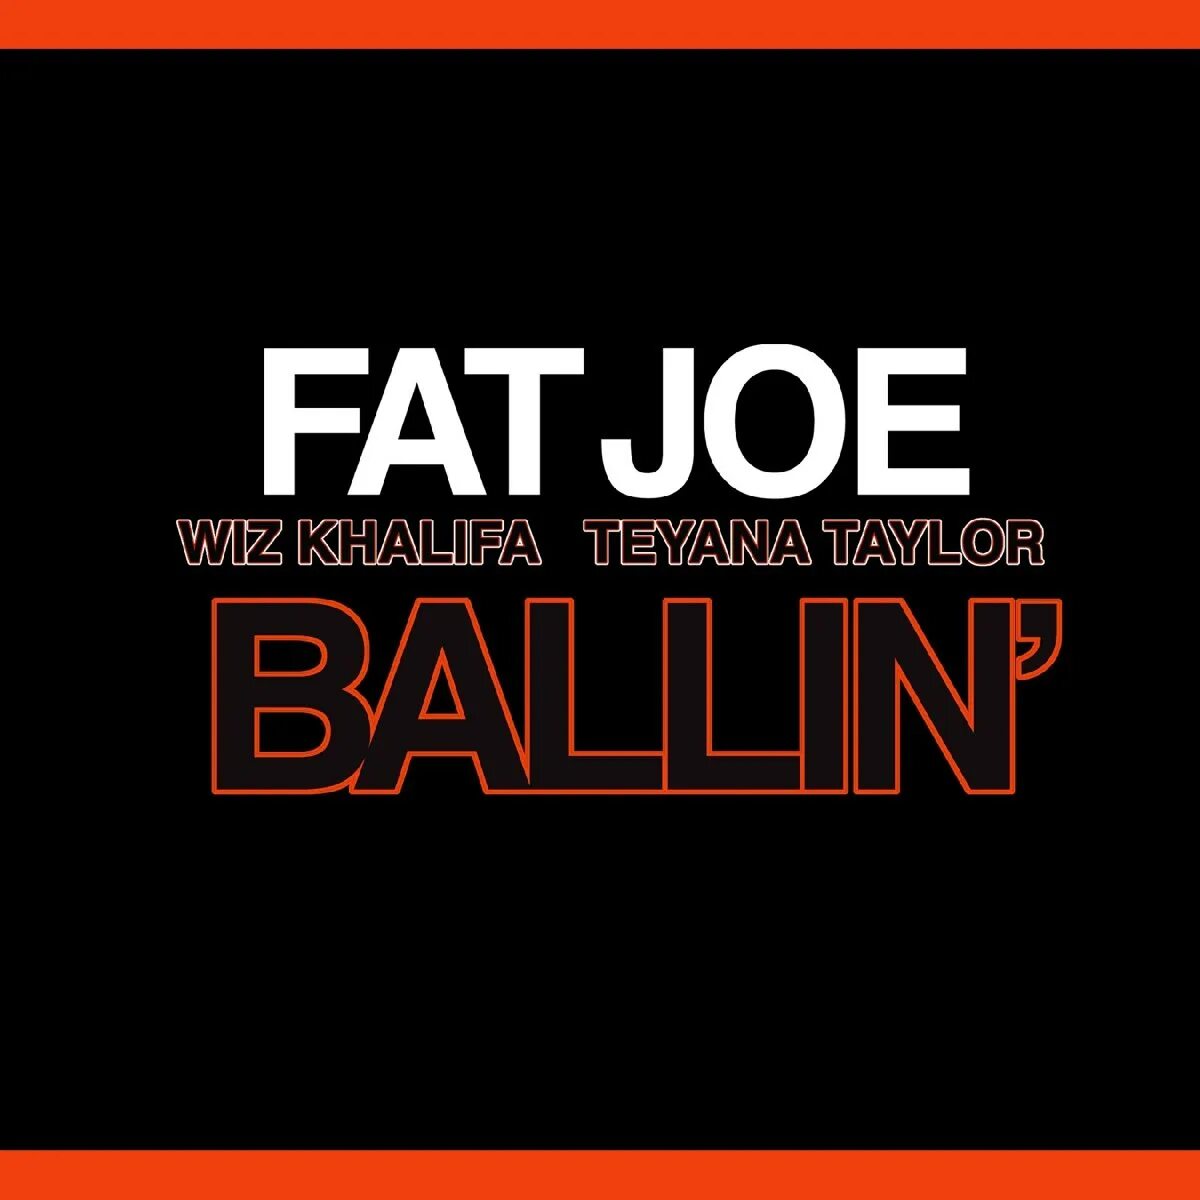 Fat Joe Ballin. Teyana Taylor Ballin. Fat Joe - Ballin ft. Wiz khalifa. Сингл фат.